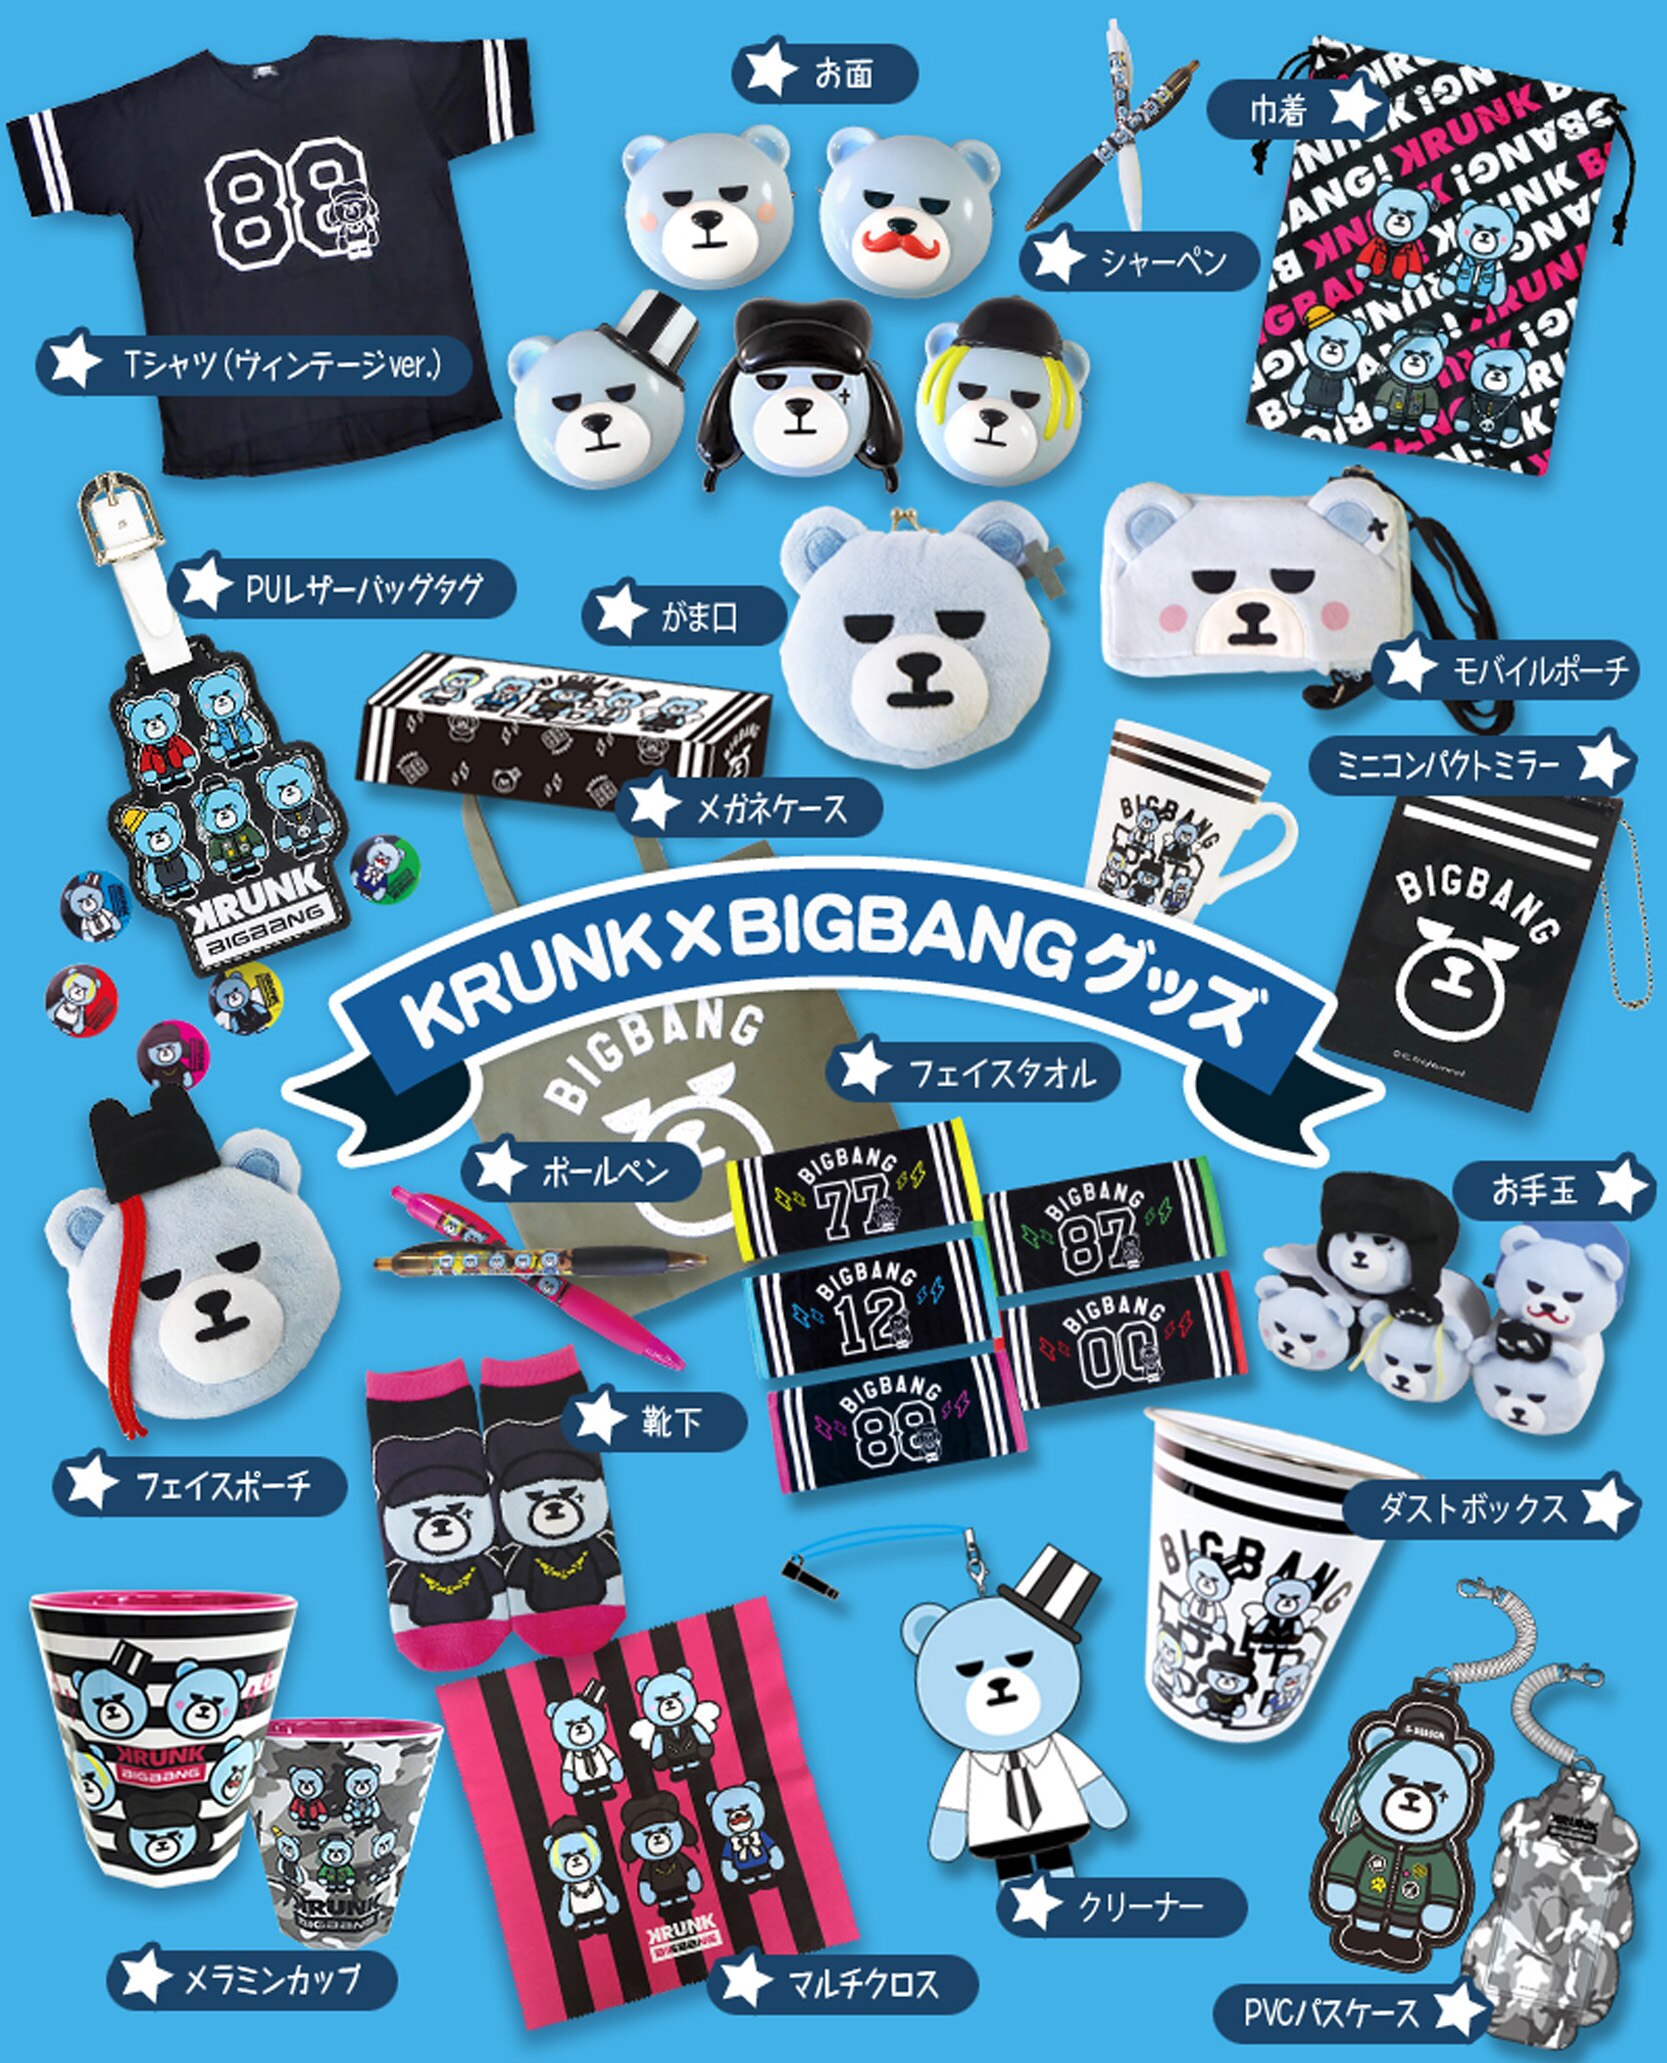 この夏大好評だった『KRUNK×BIGBANG CAFE』が福岡にオープン